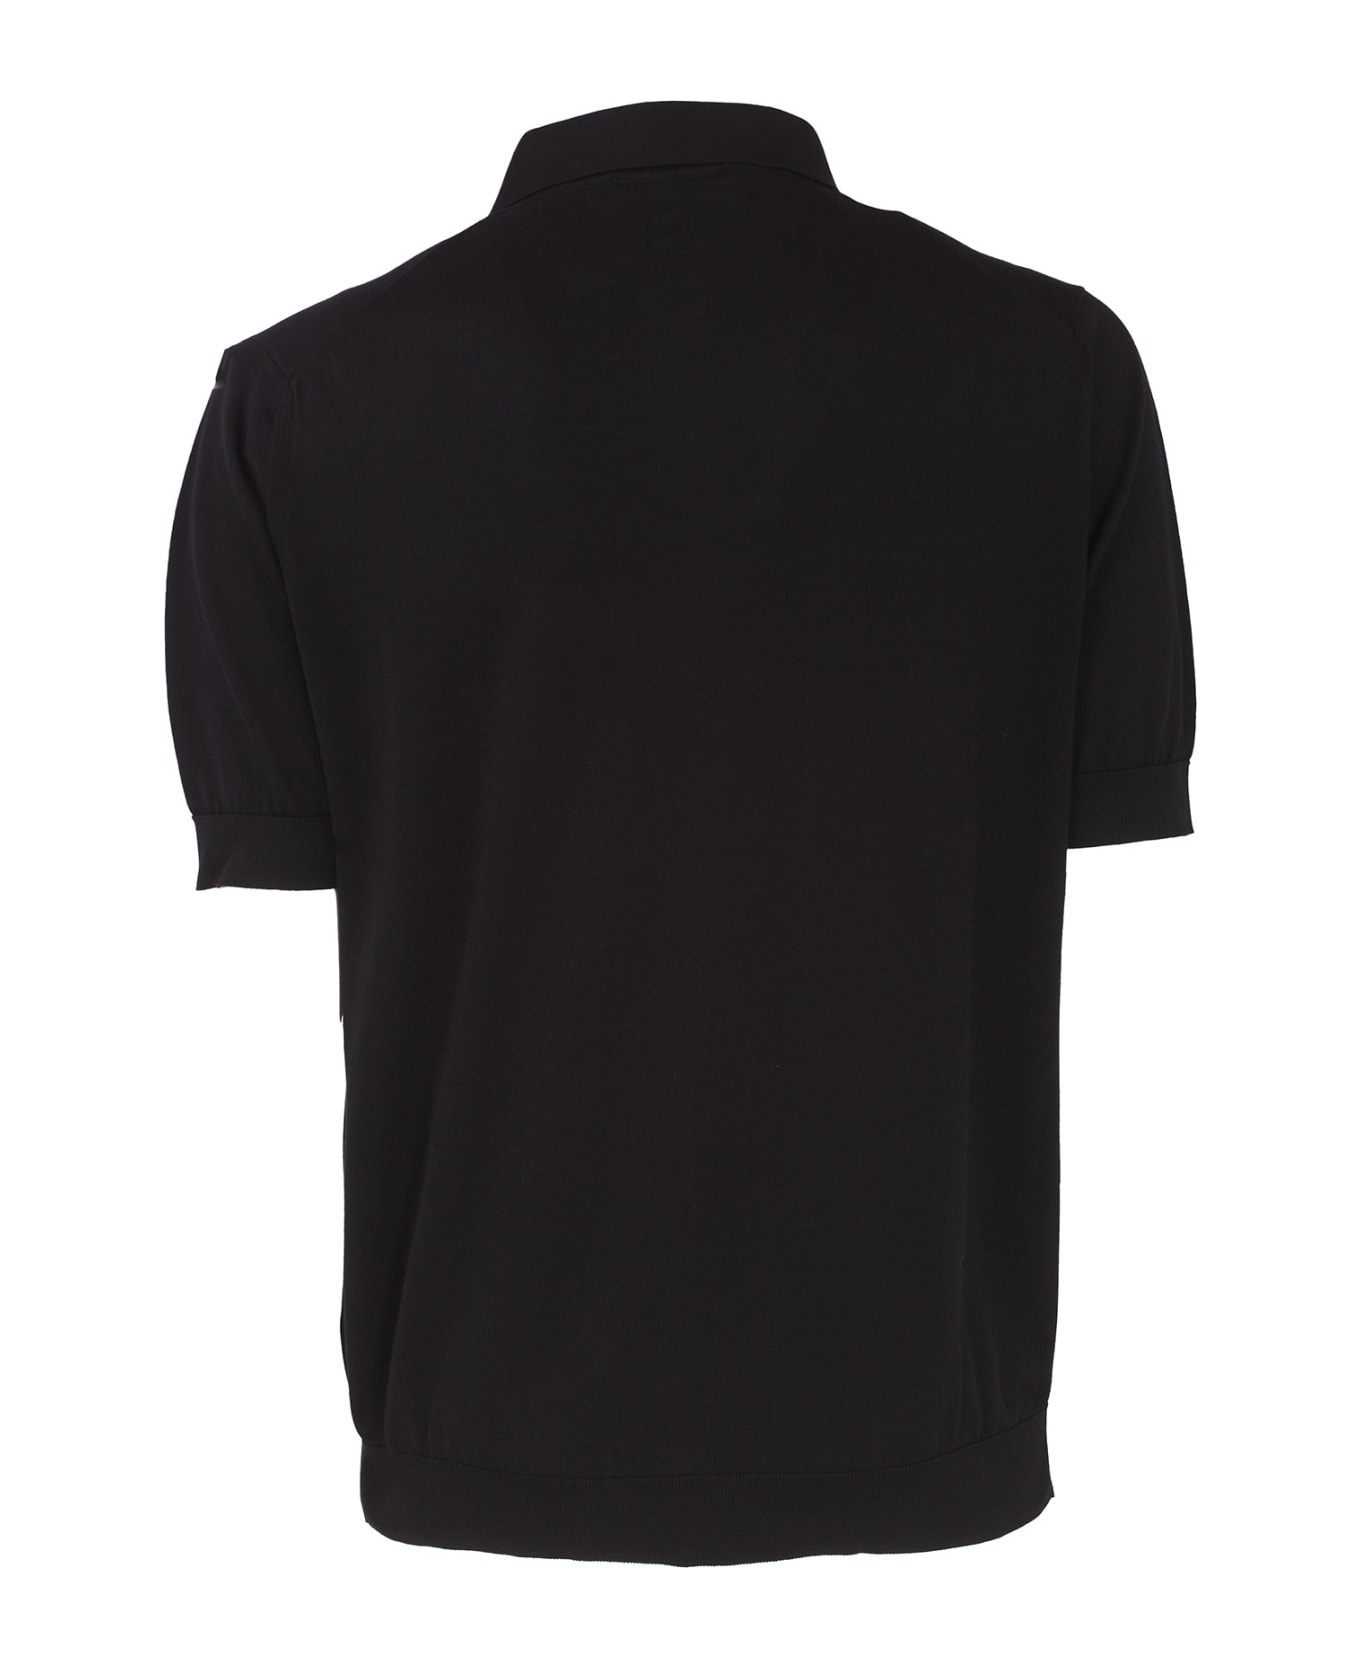 Lardini T-shirts And Polos Black - Black